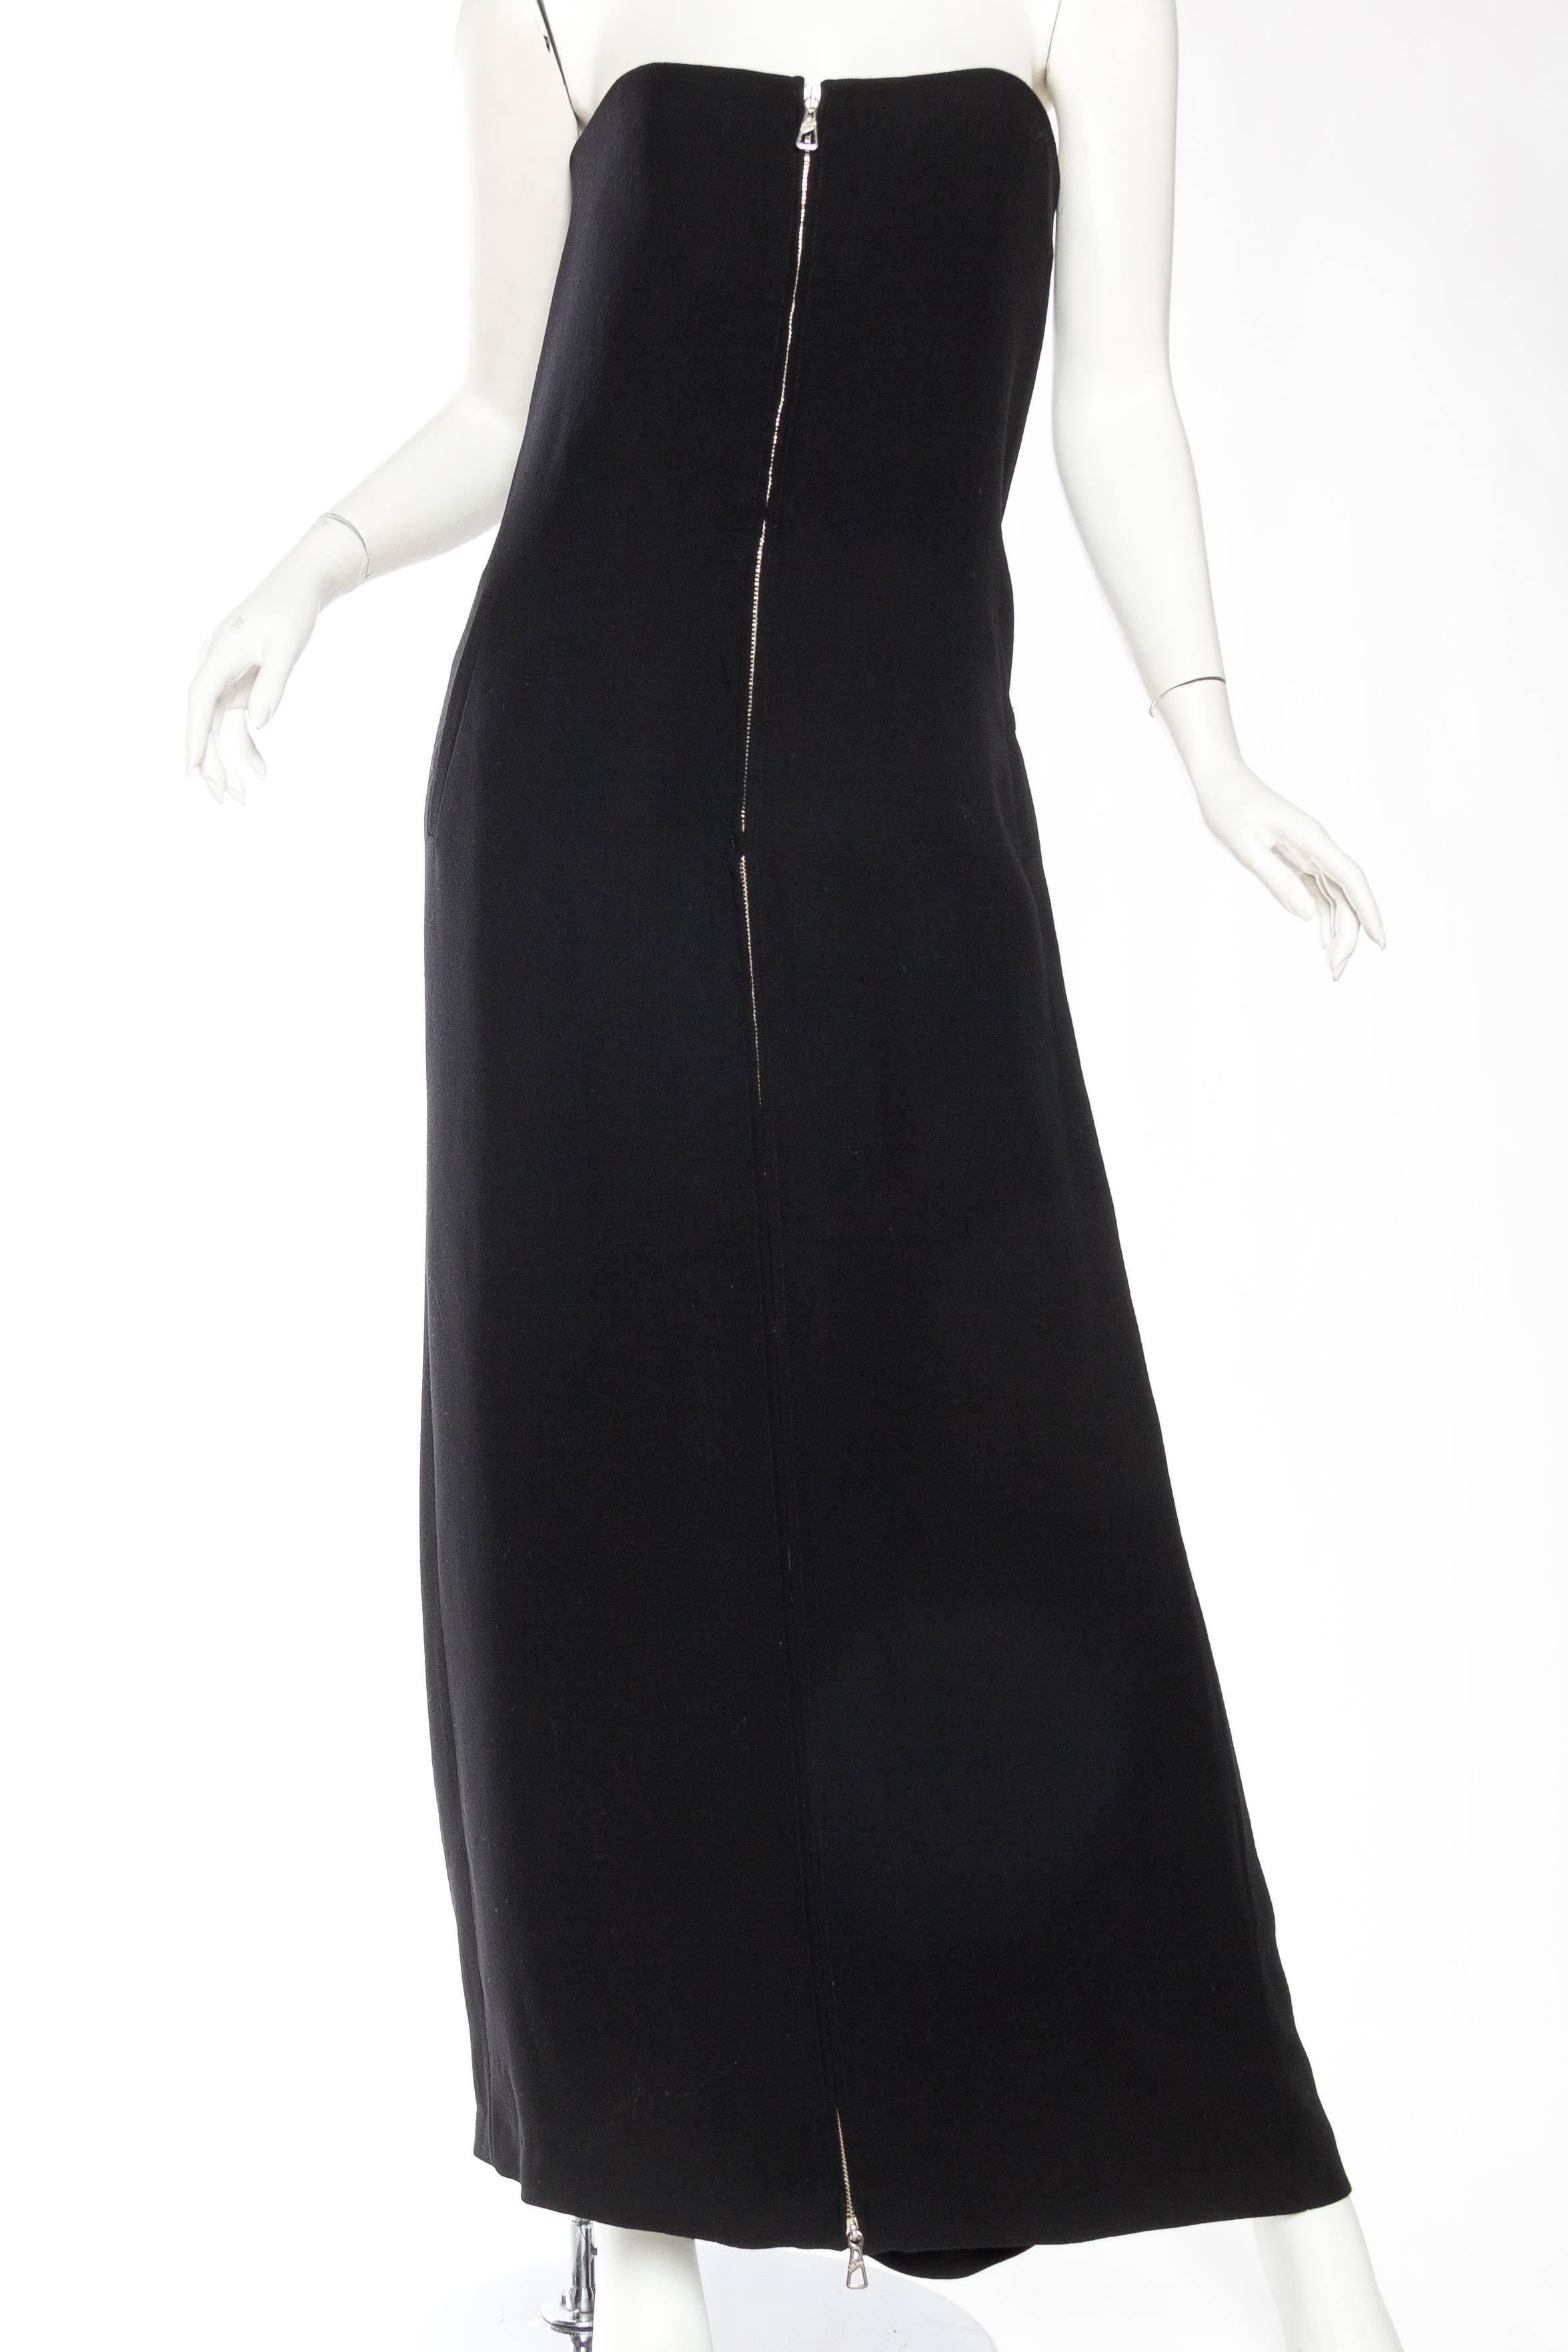 Noir Jean-Paul Gaultier - Combinaison noire à fermeture éclair centrale qui se transforme en robe, années 2000 en vente